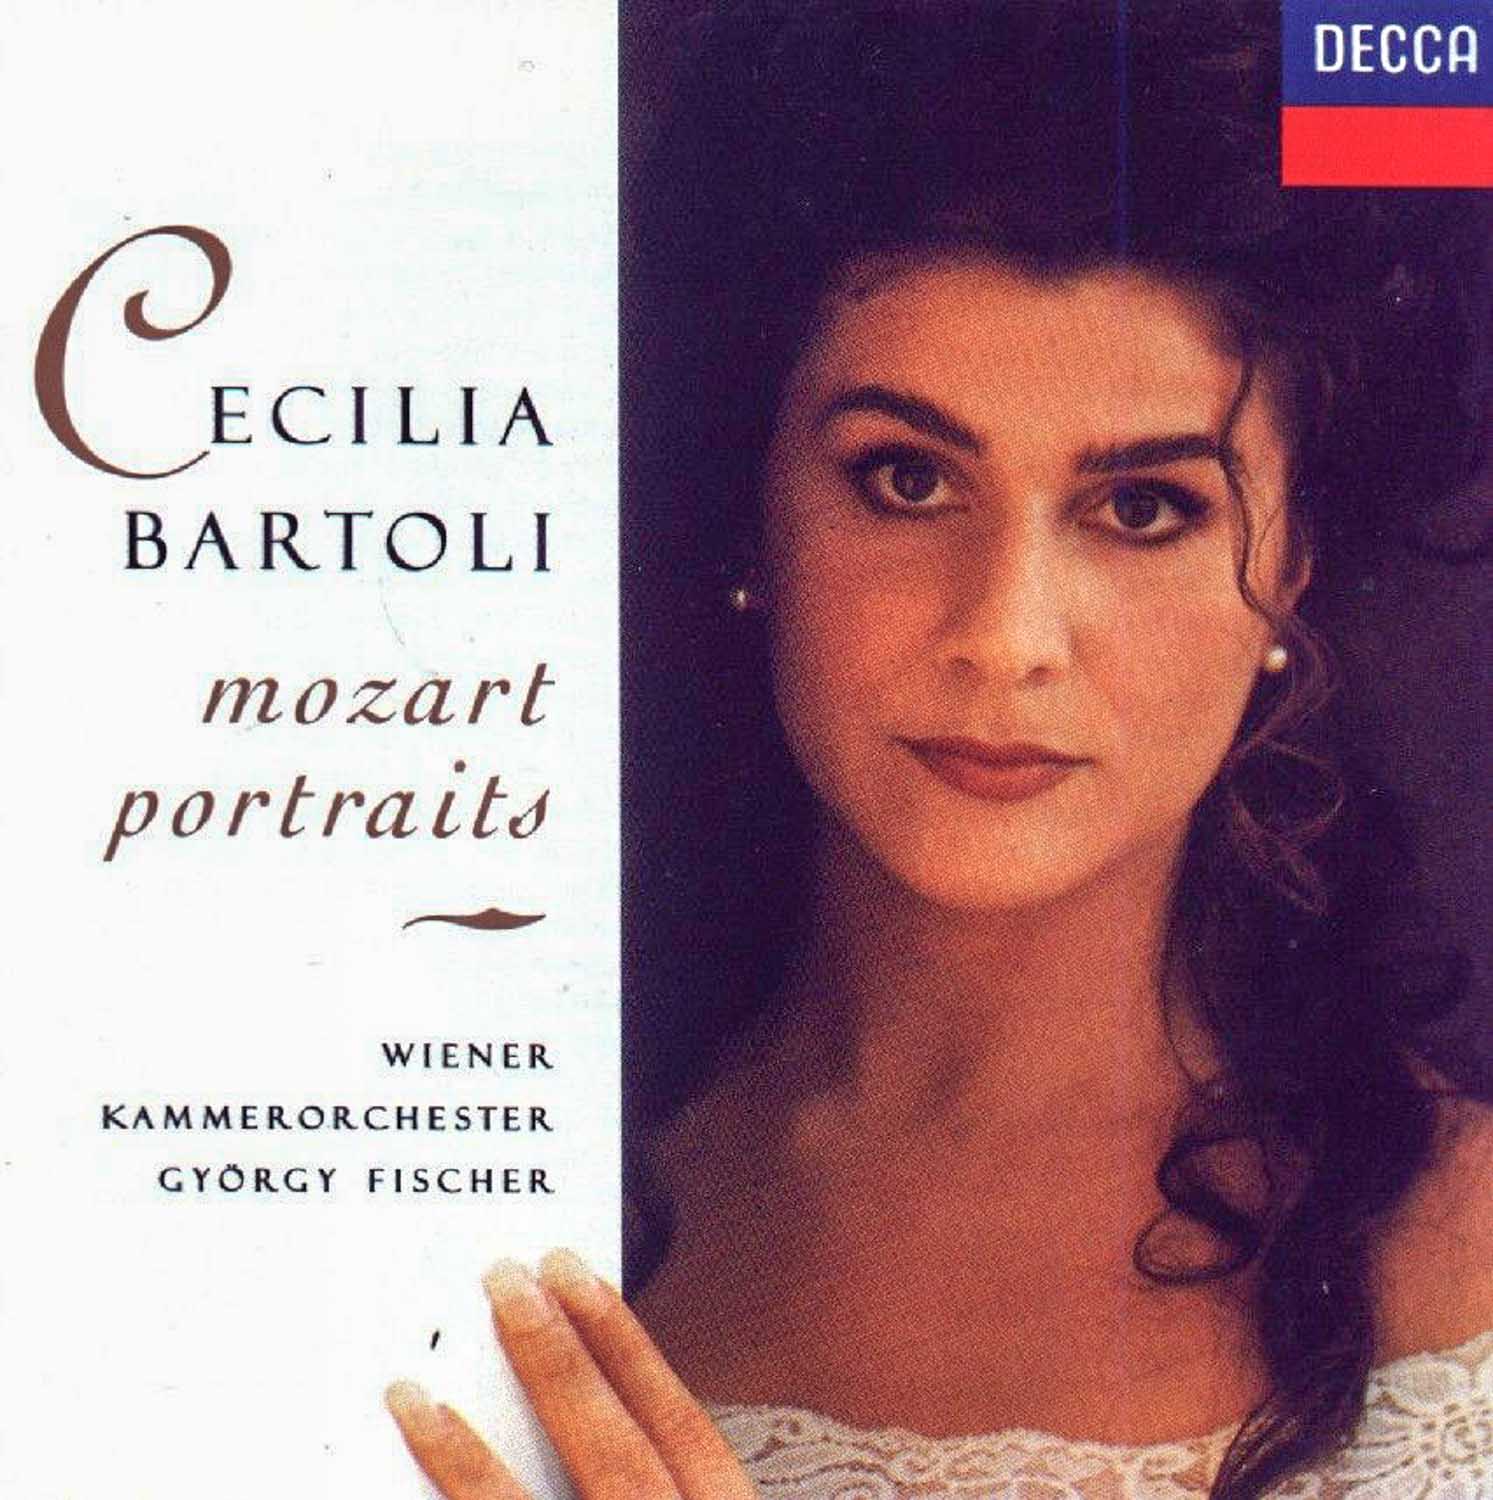 Cecilia Bartoli; György Fischer, Wiener Kammerorchester  Cecilia Bartoli: Mozart Portraits  *Audio-CD*. 